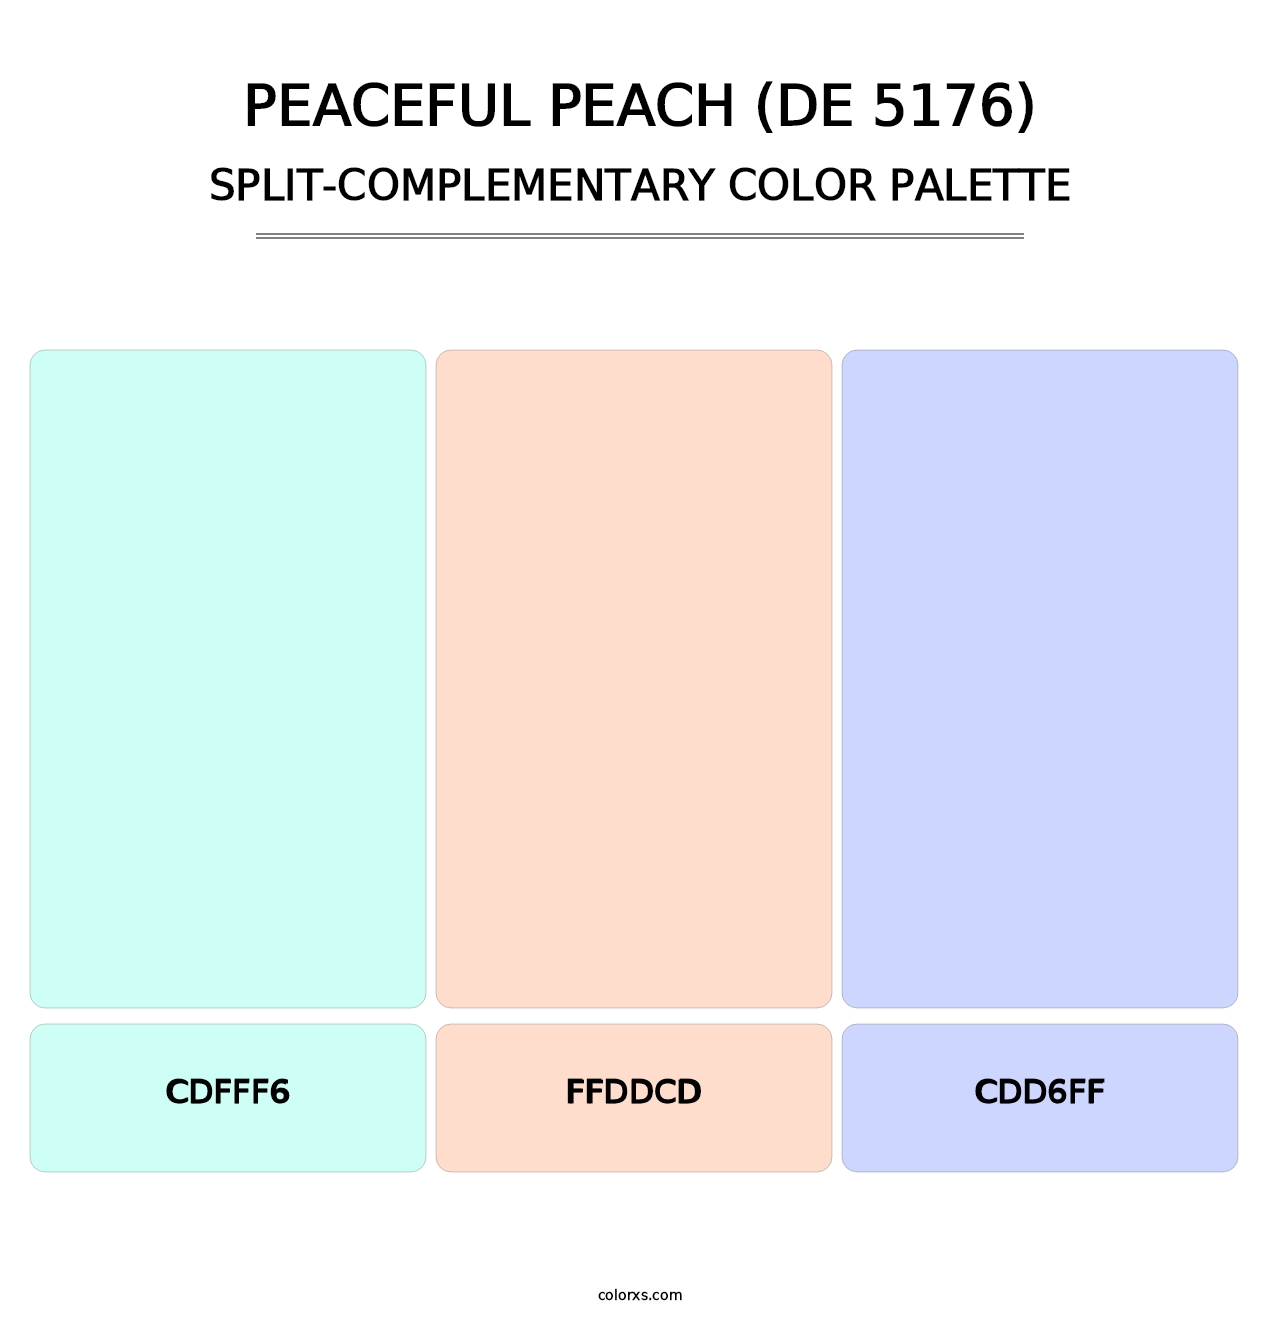 Peaceful Peach (DE 5176) - Split-Complementary Color Palette